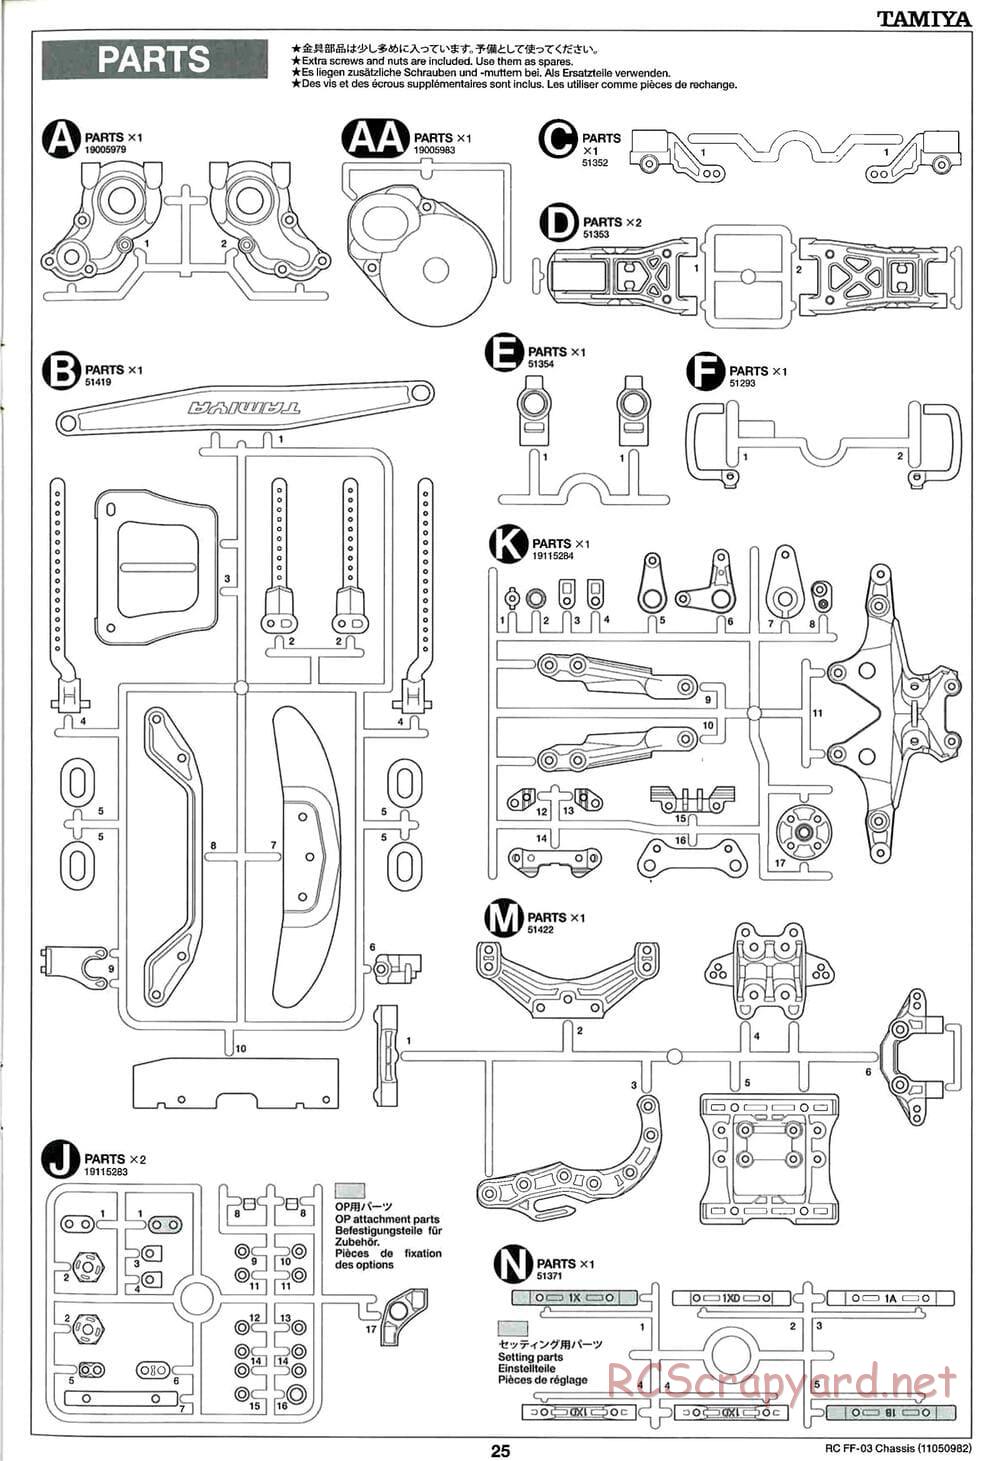 Tamiya - Honda Accord Aero Custom - FF-03 Chassis - Manual - Page 25